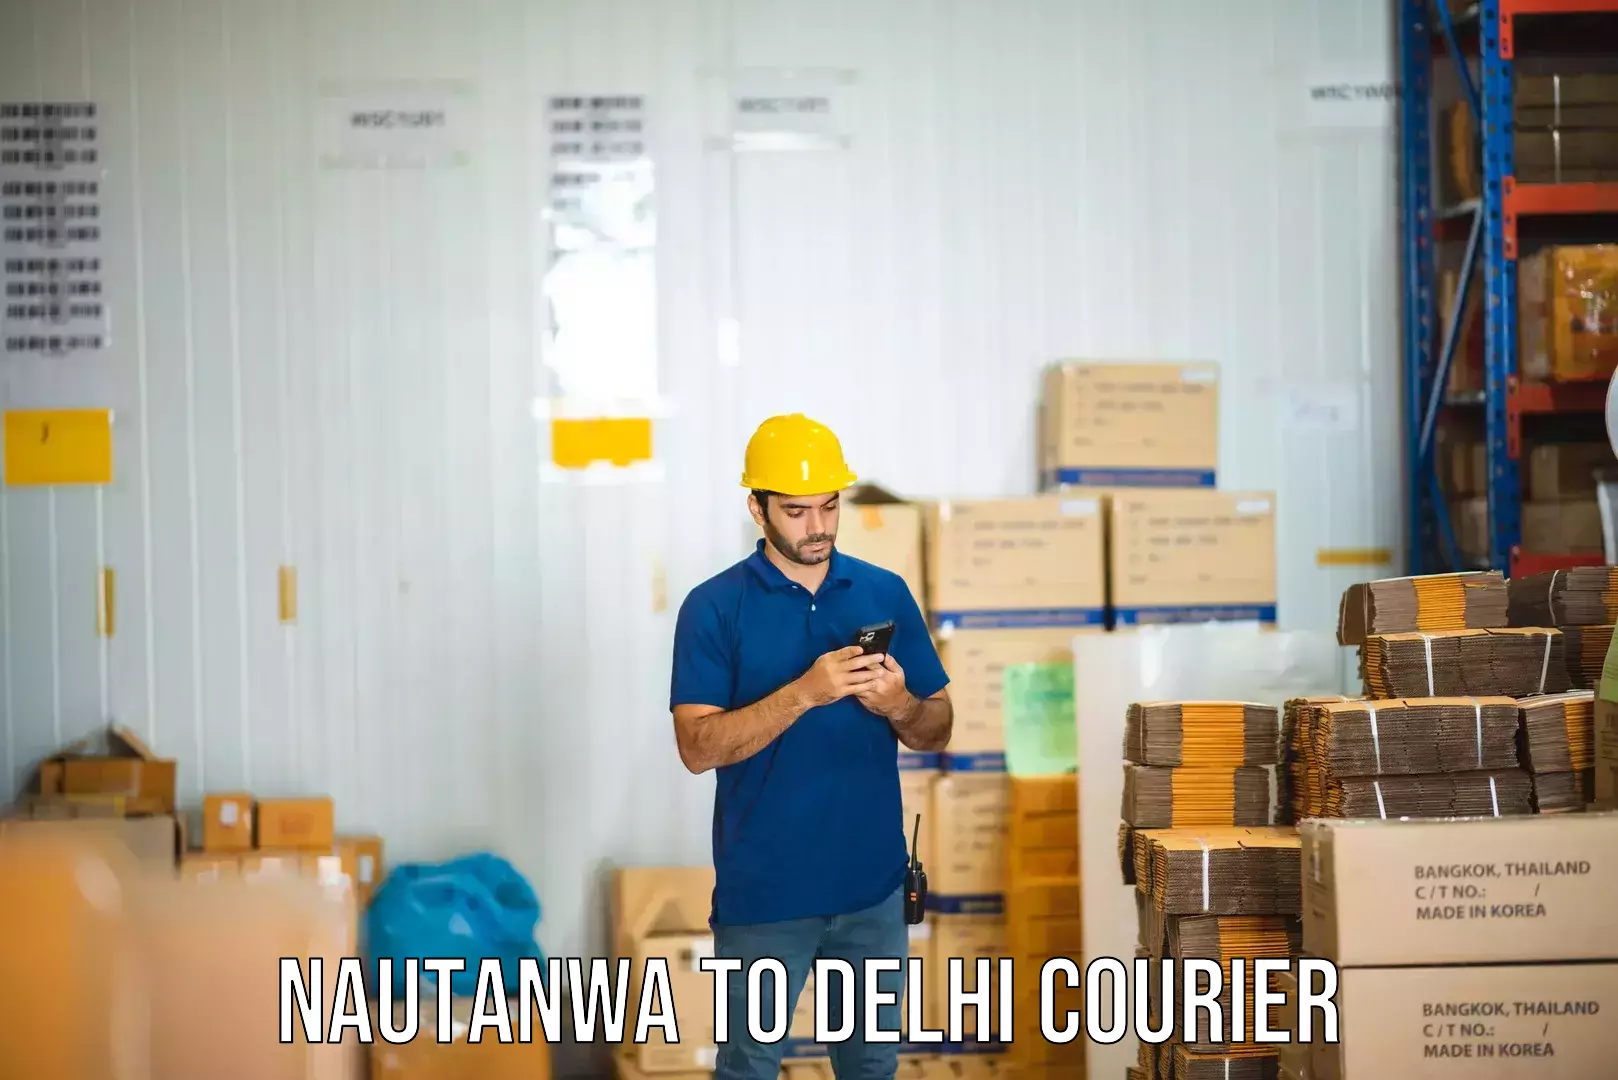 Supply chain delivery Nautanwa to Delhi